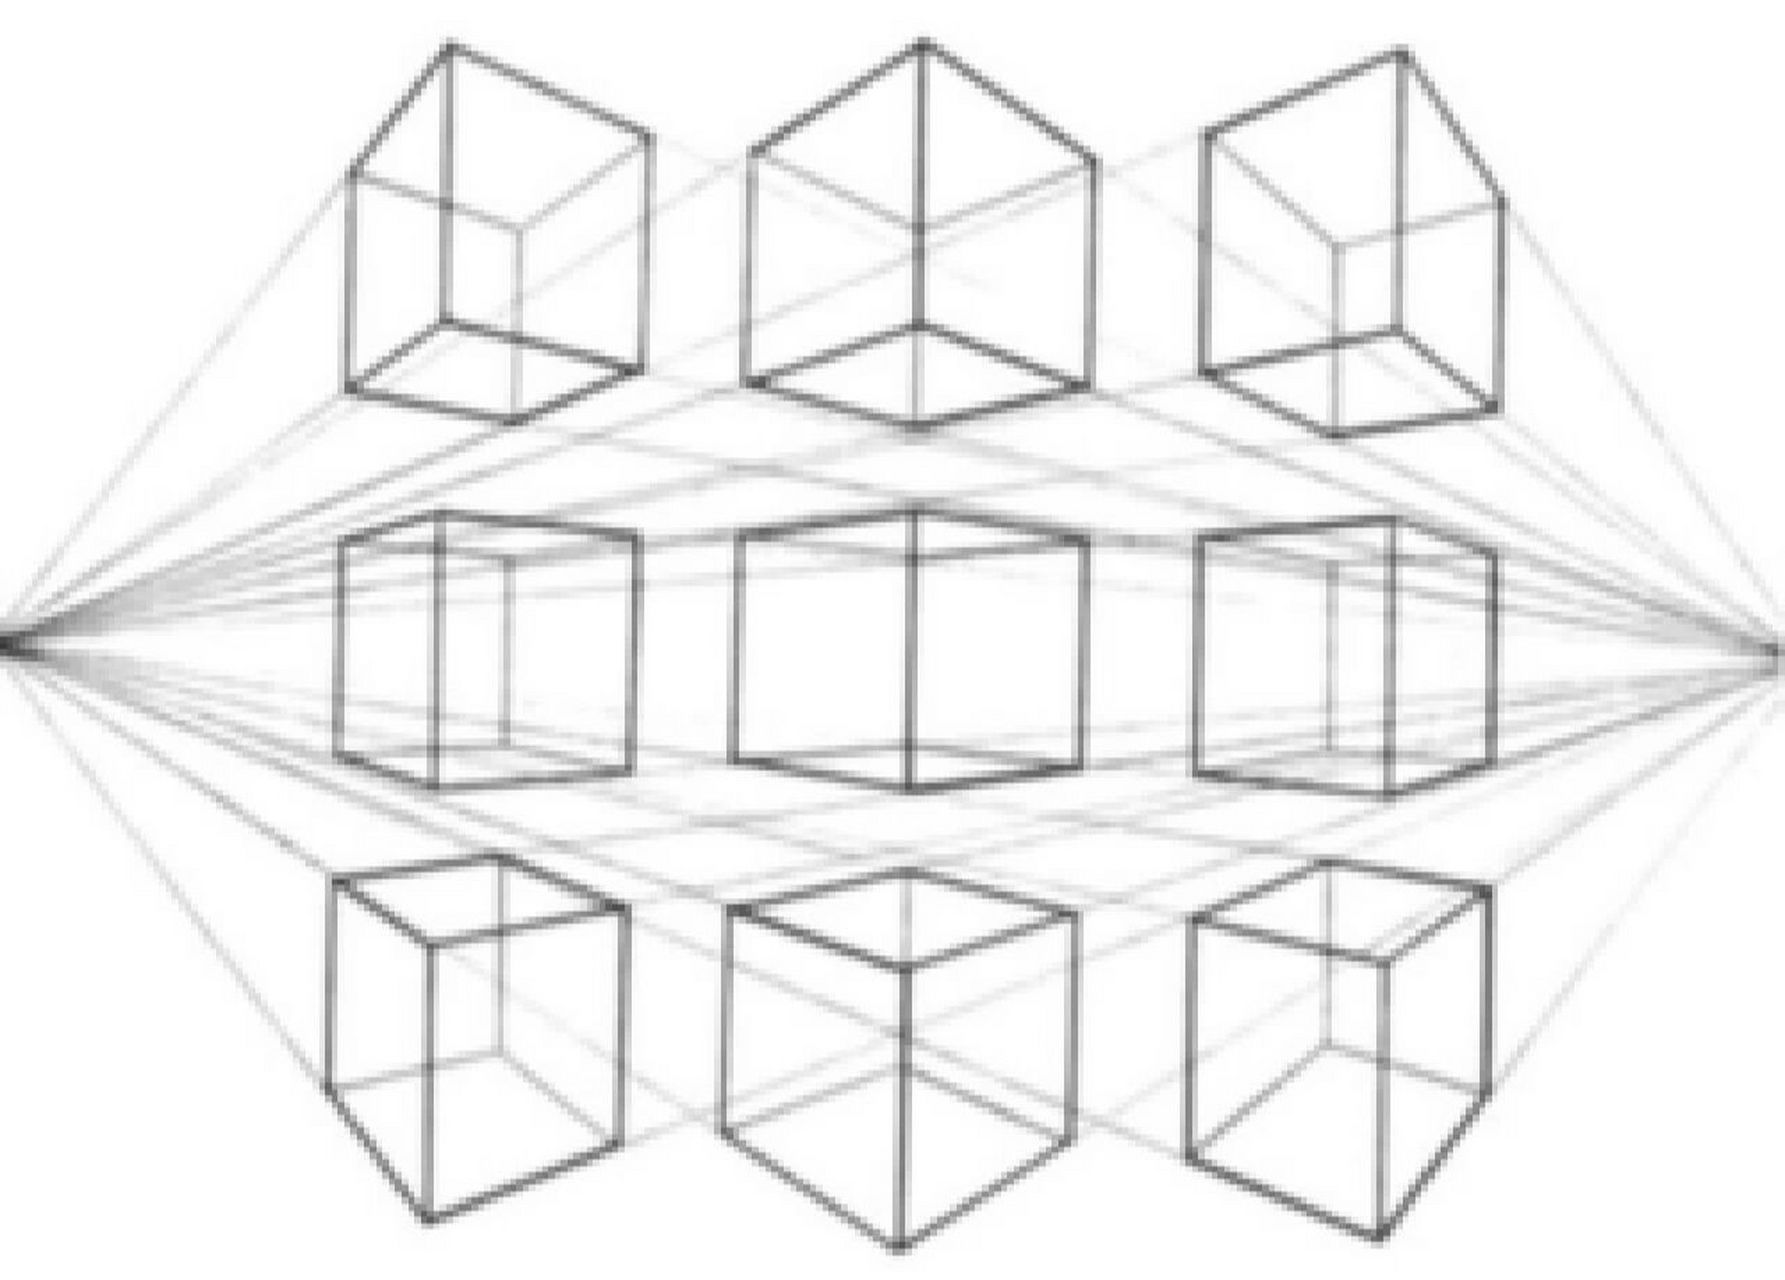 什么是成角透视 成角透视又称为二点透视,就是把立方体画到画面上